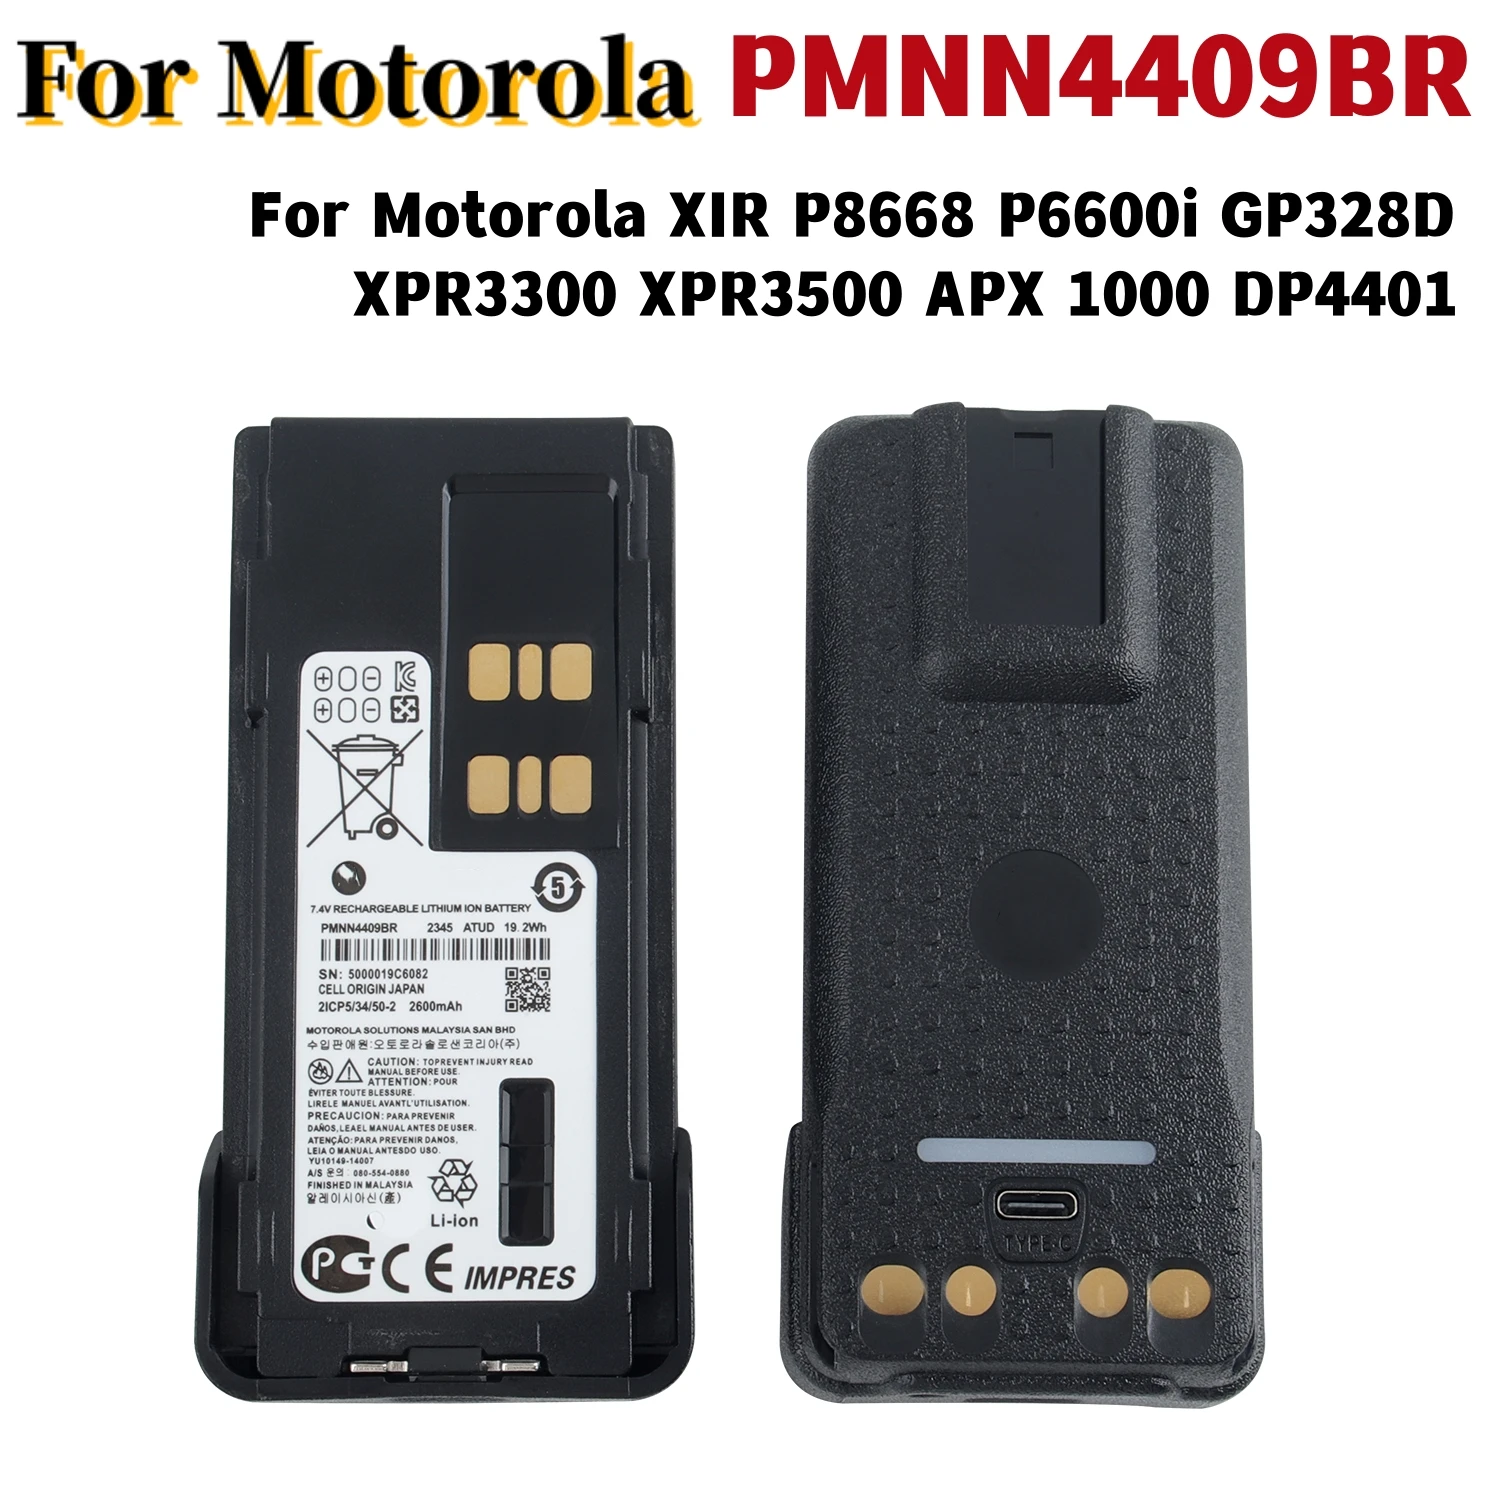 PMNN4409BR Оригинальная USB Аккумуляторная Батарея для Motorola XIR P8668 P6600i GP328D XPR3300 XPR3500 APX 1000 DP4401 Двухсторонние Радиостанции